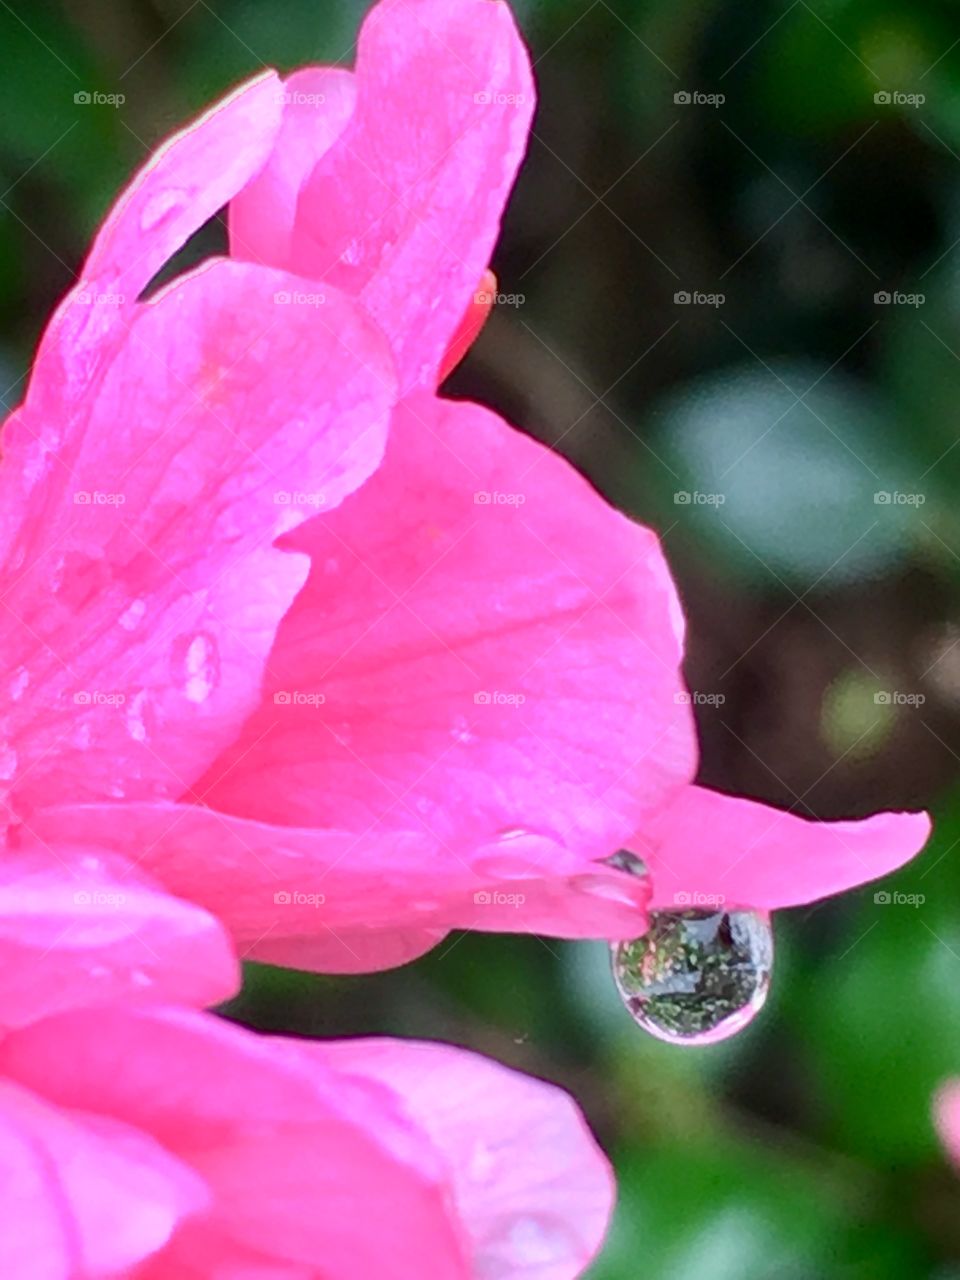 Raindrop reflection on the edge of azaleas’ blooms